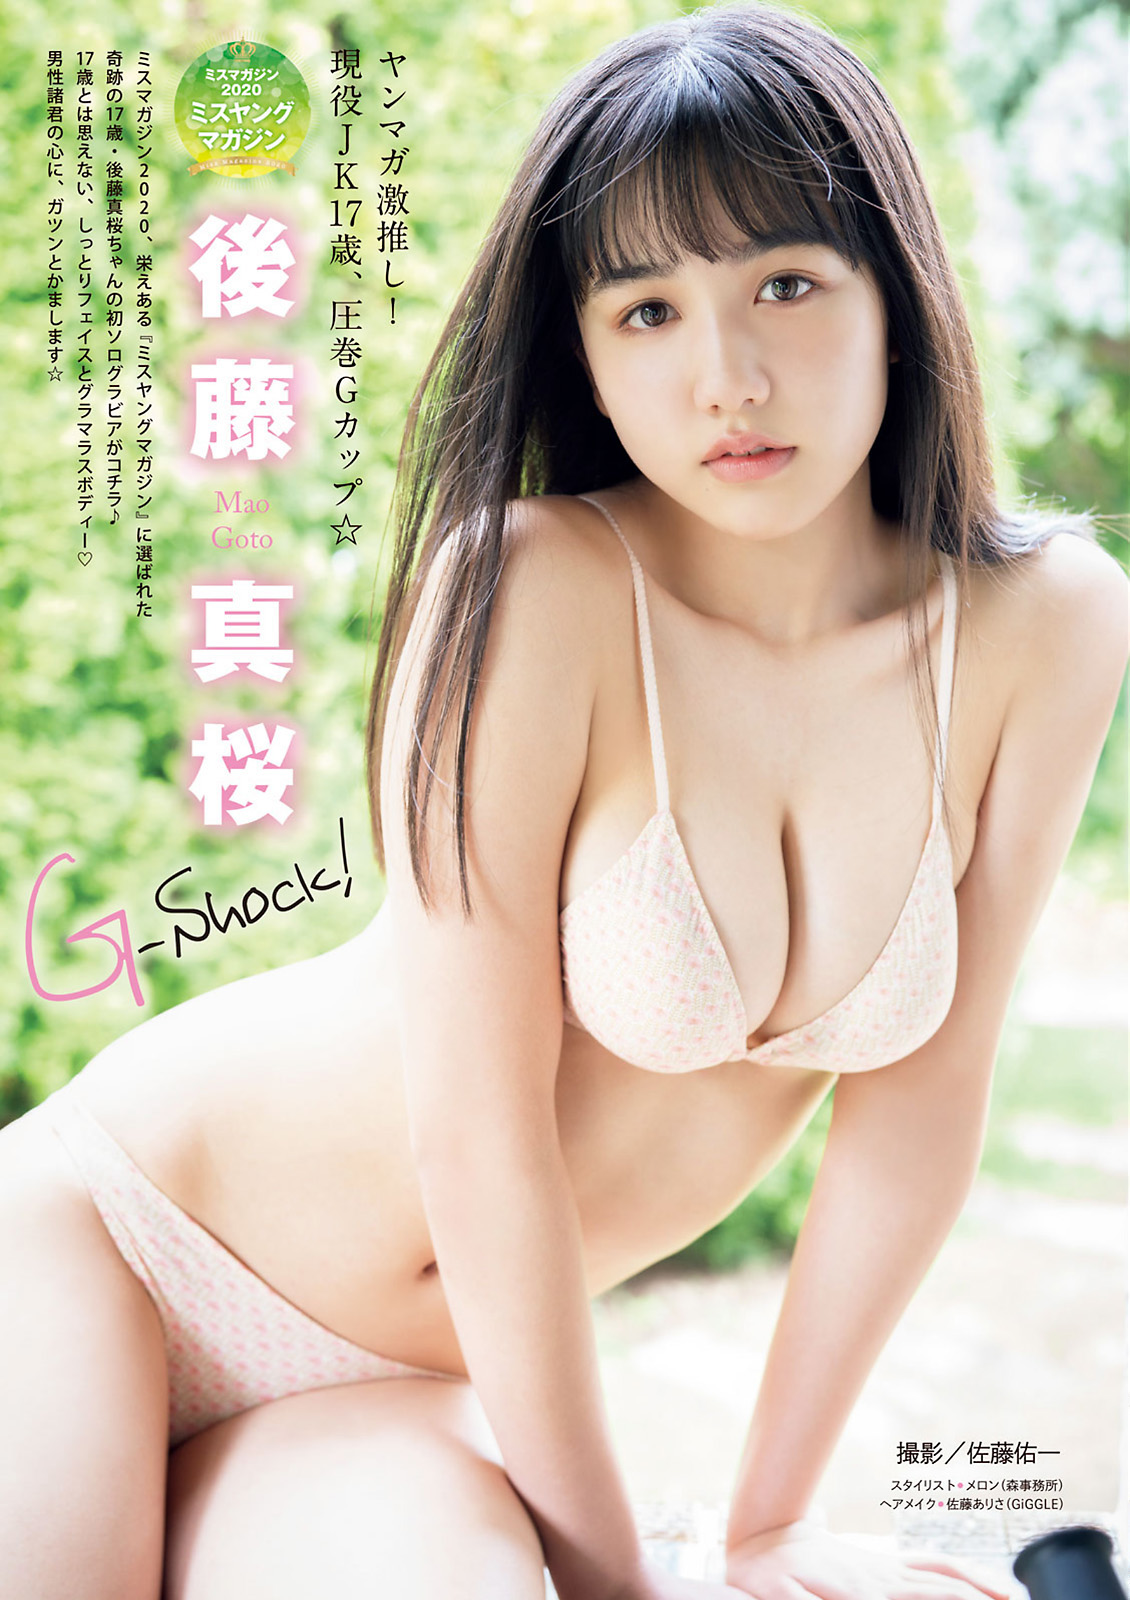 日本正妹女模後藤真桜 美乳大解放胸前乳量超誇張 - 貼圖 - 清涼寫真 -